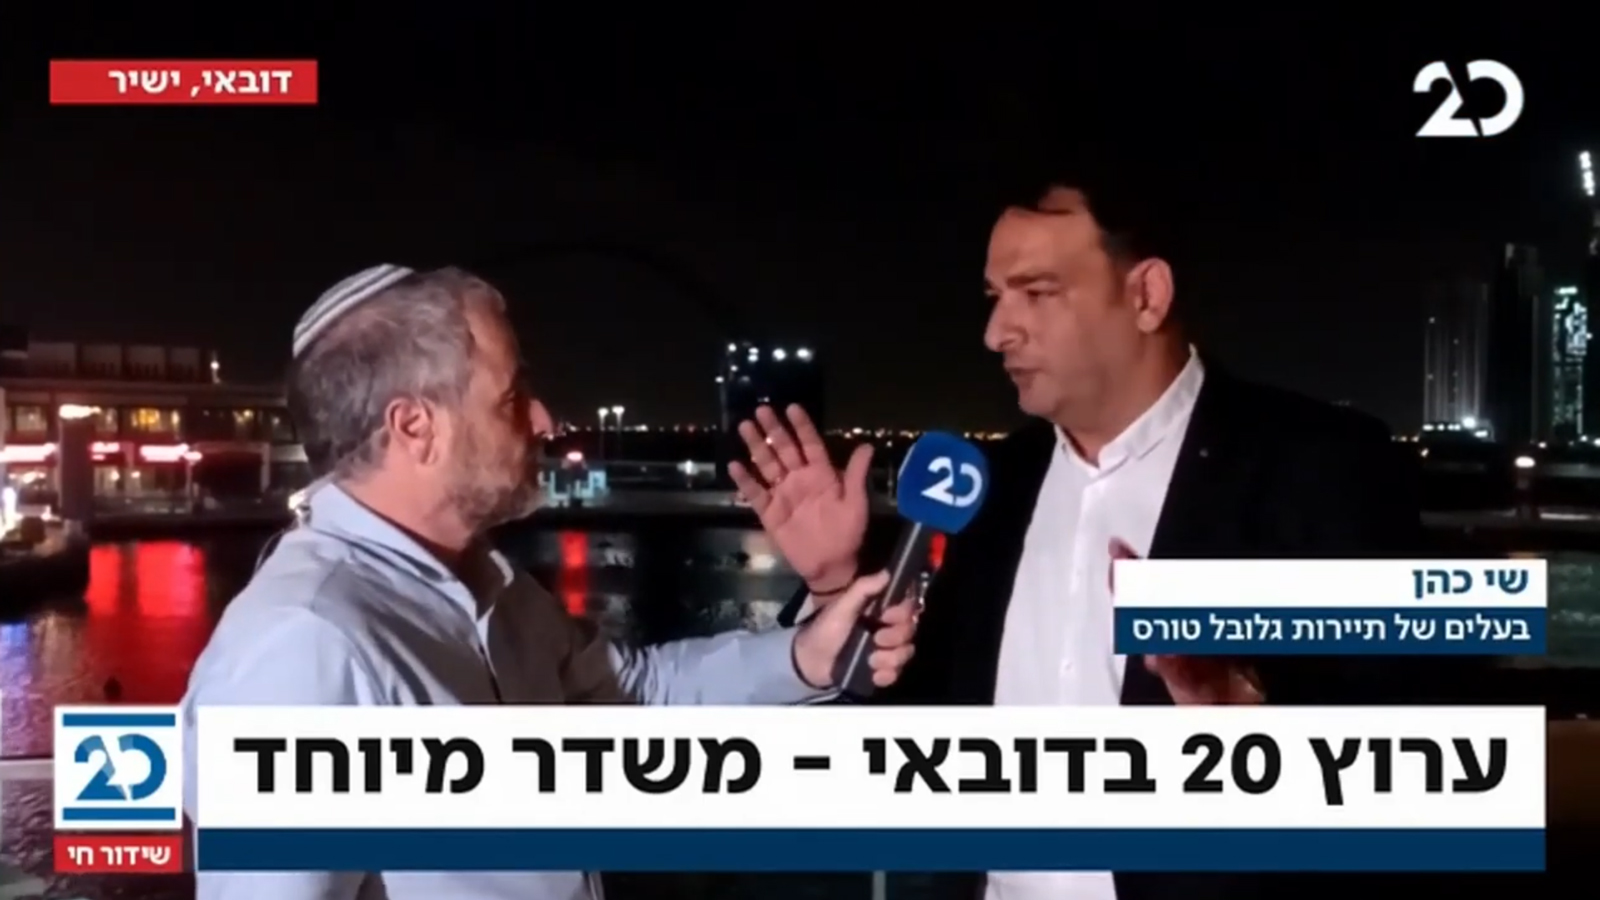 שמעון ריקלין מראיין בדובאי את שי כהן, שהטיס אותו לשם יחד עם אנשי תקשורת נוספים מערוץ 20 (צילום מסך)